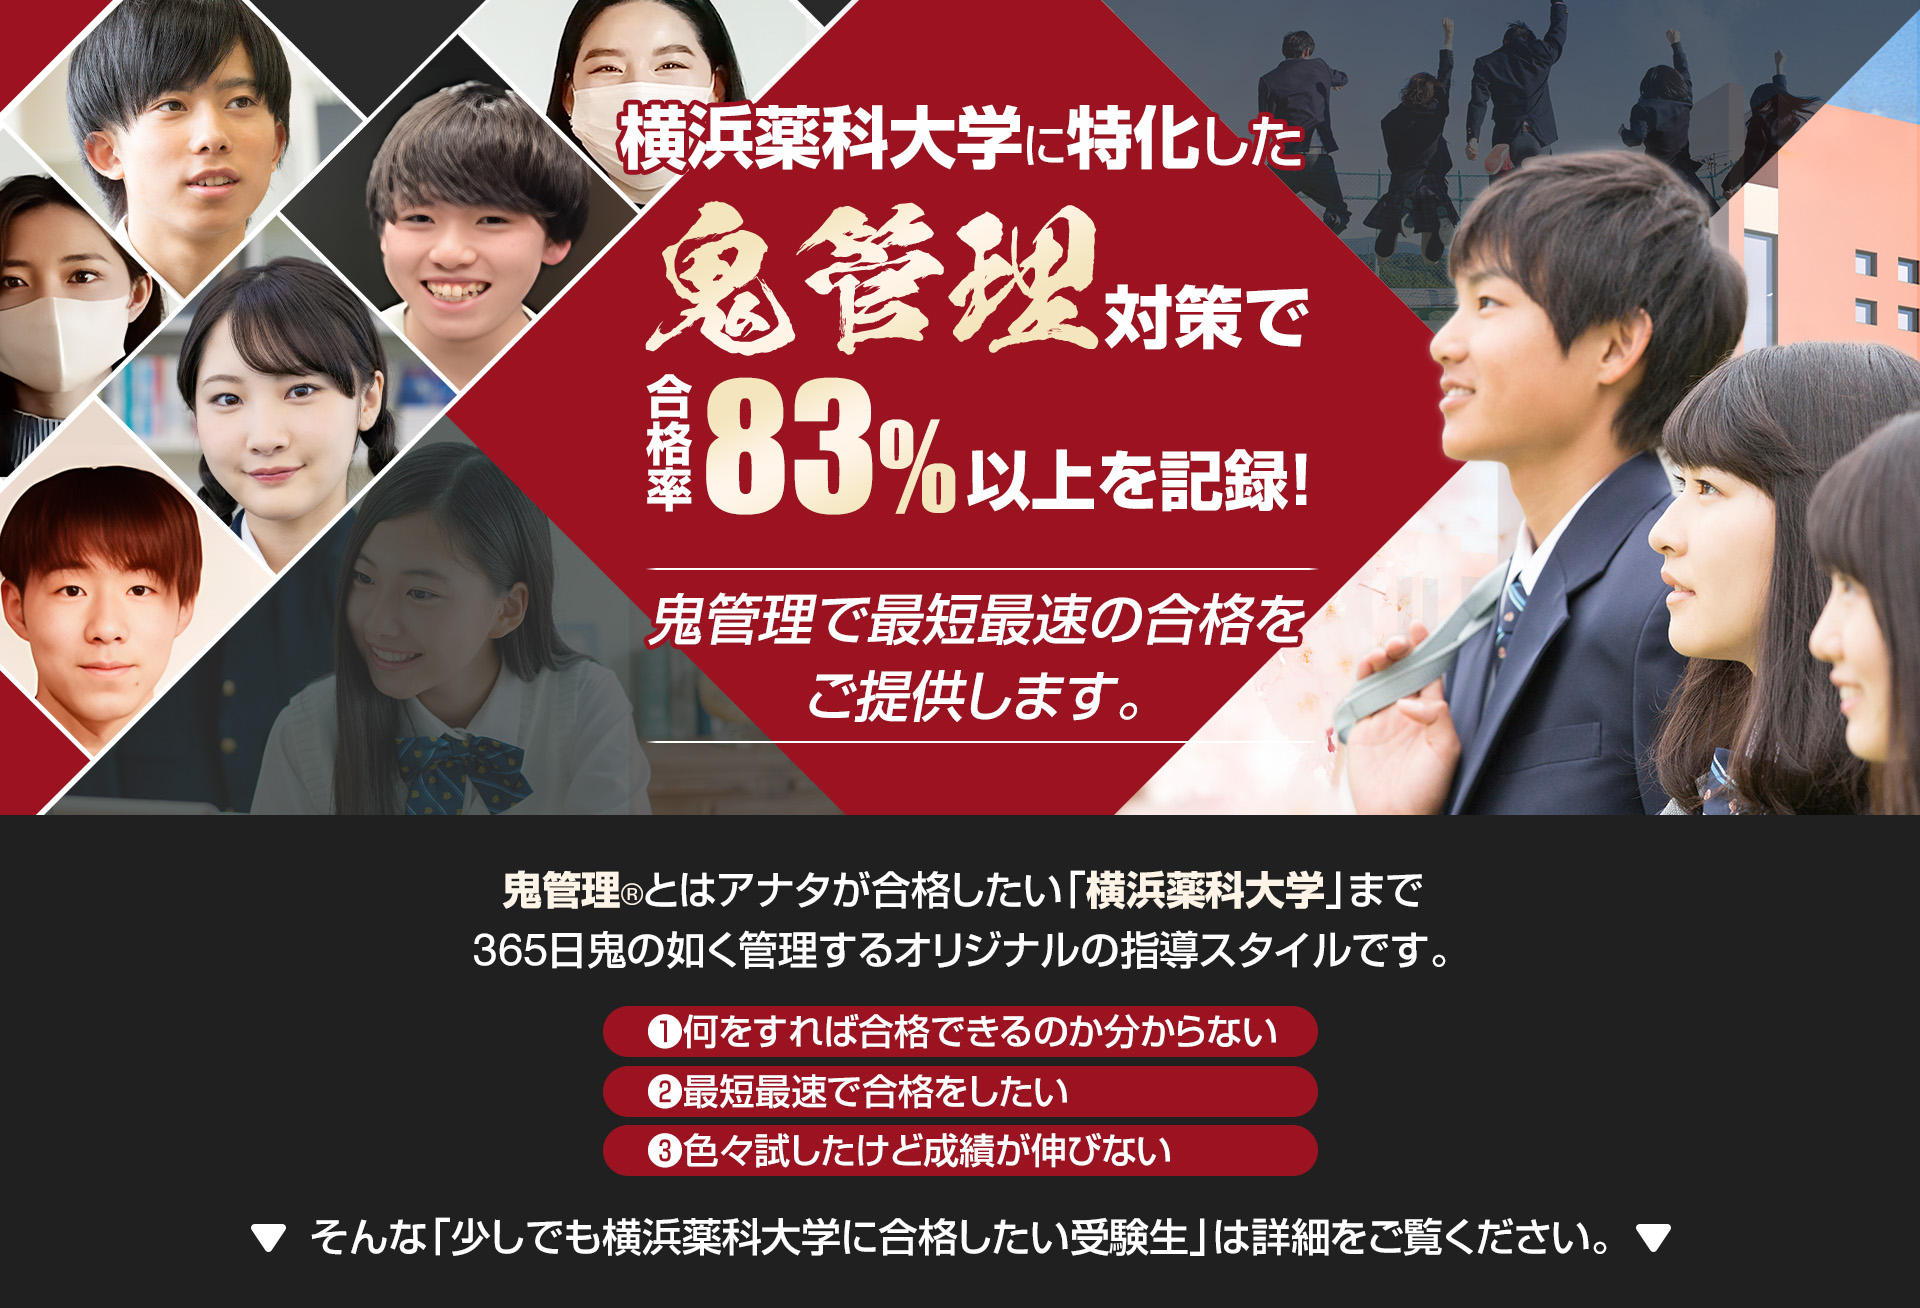 横浜薬科大学に特化した鬼管理対策で合格率83％以上を記録。鬼管理でアナタが合格したい横浜薬科大学への最短最速の合格を提供します。